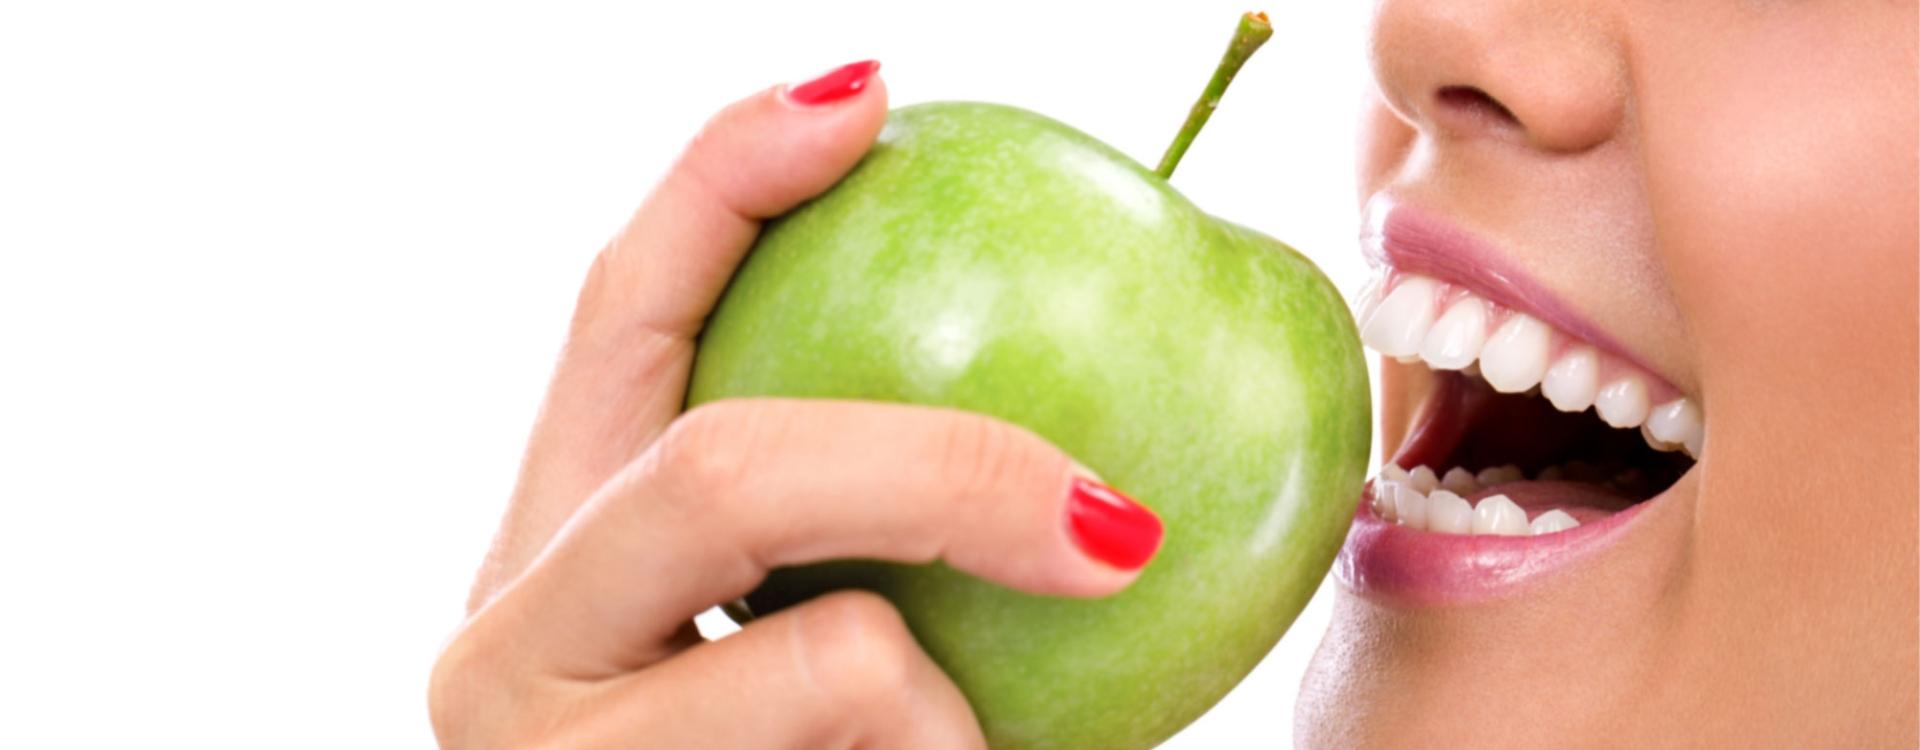 Osoba z białymi zębami je zielone jabłko